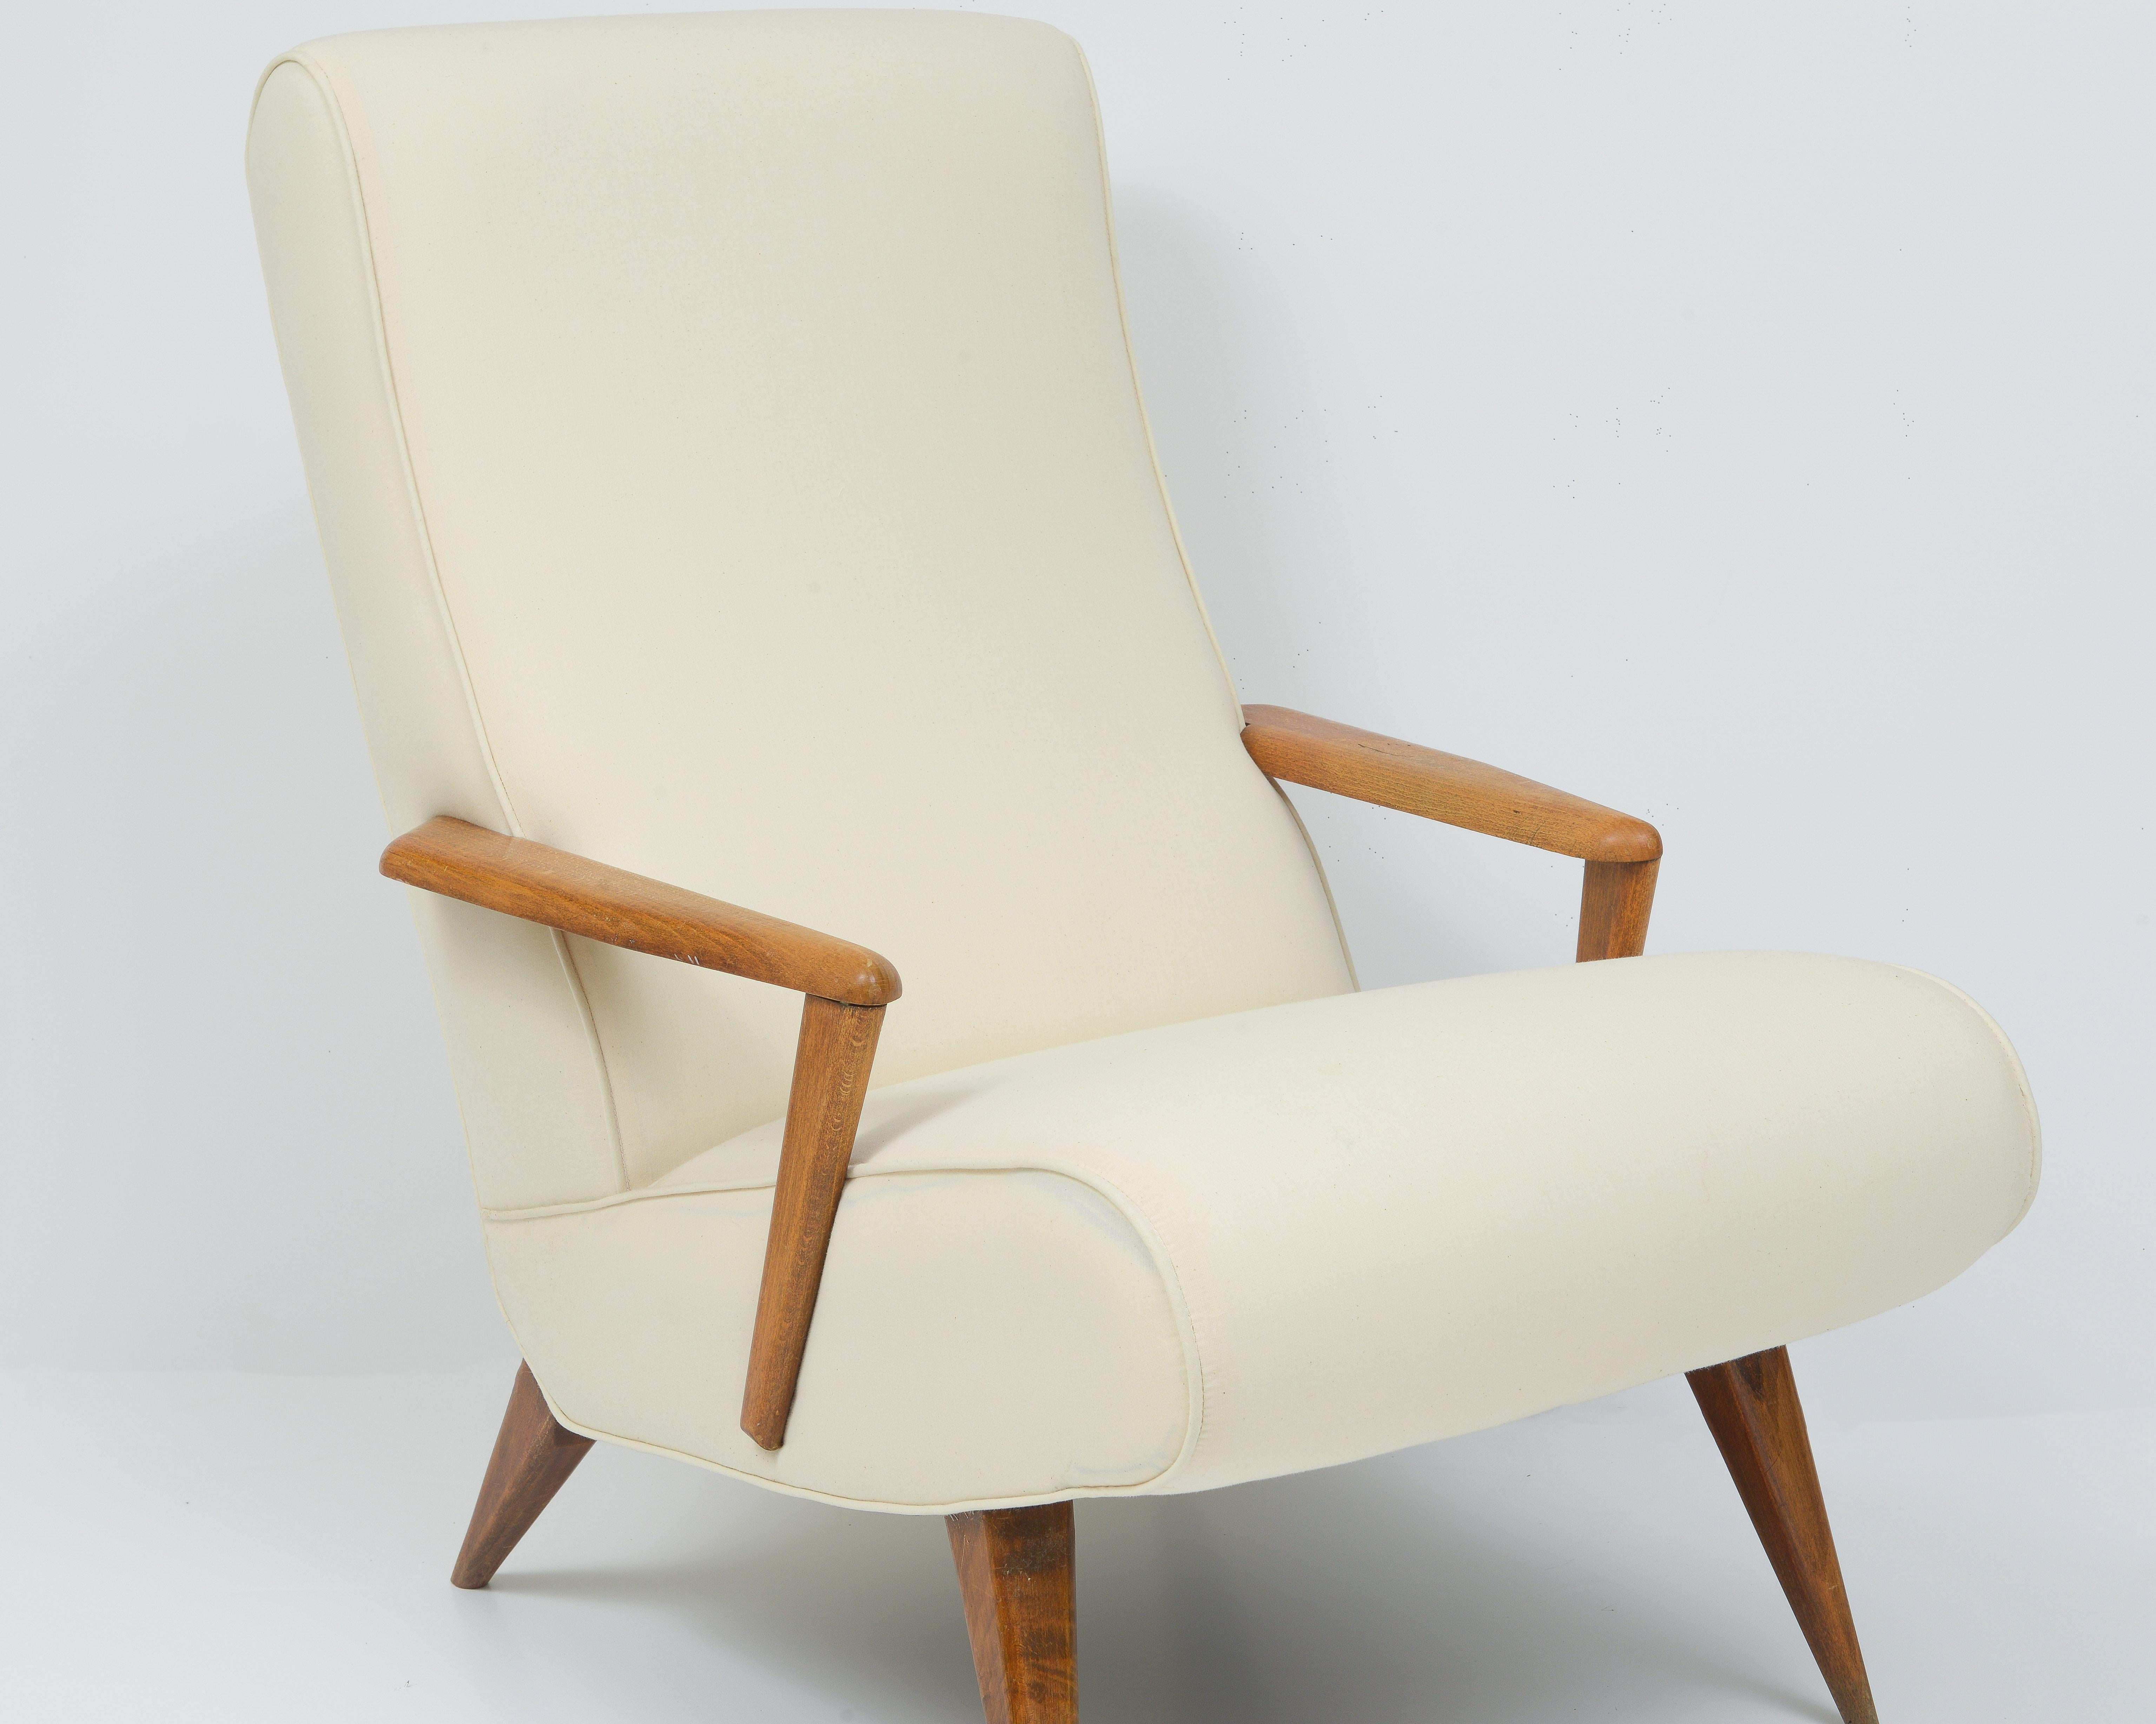 Dies ist ein Paar schöne tiefe und stilvolle Lounge-Sessel. Unglaubliche Form und neu gepolstert und bequem. Schicke Linien. 
Diese werden aus Italien importiert.